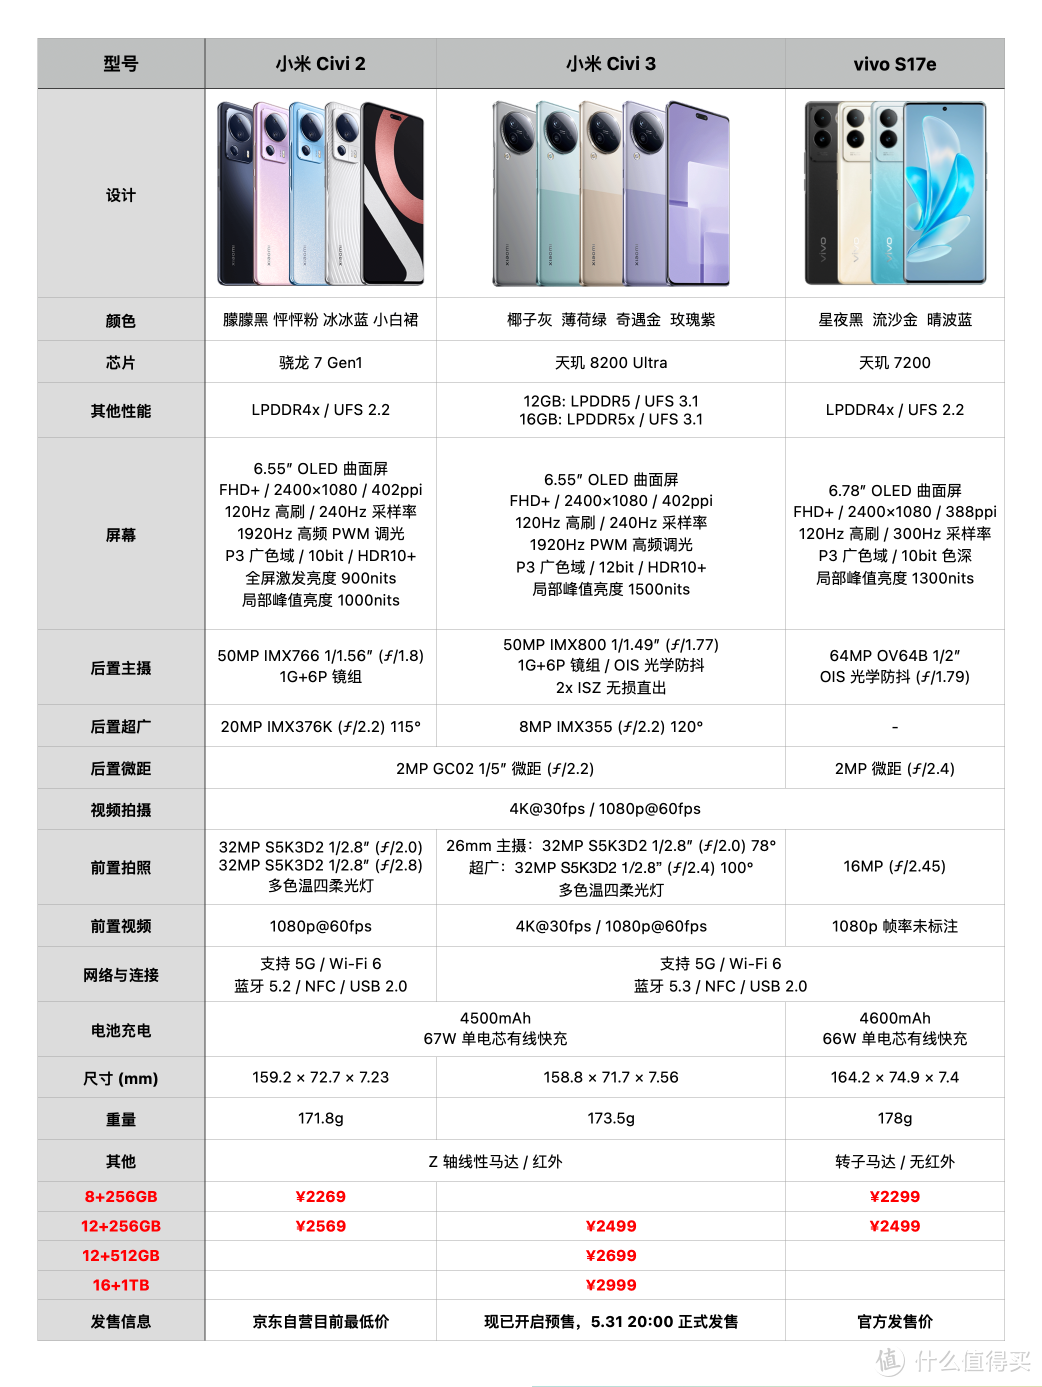 5.25 发布的小米 Civi 3 手机值不值得买？ 